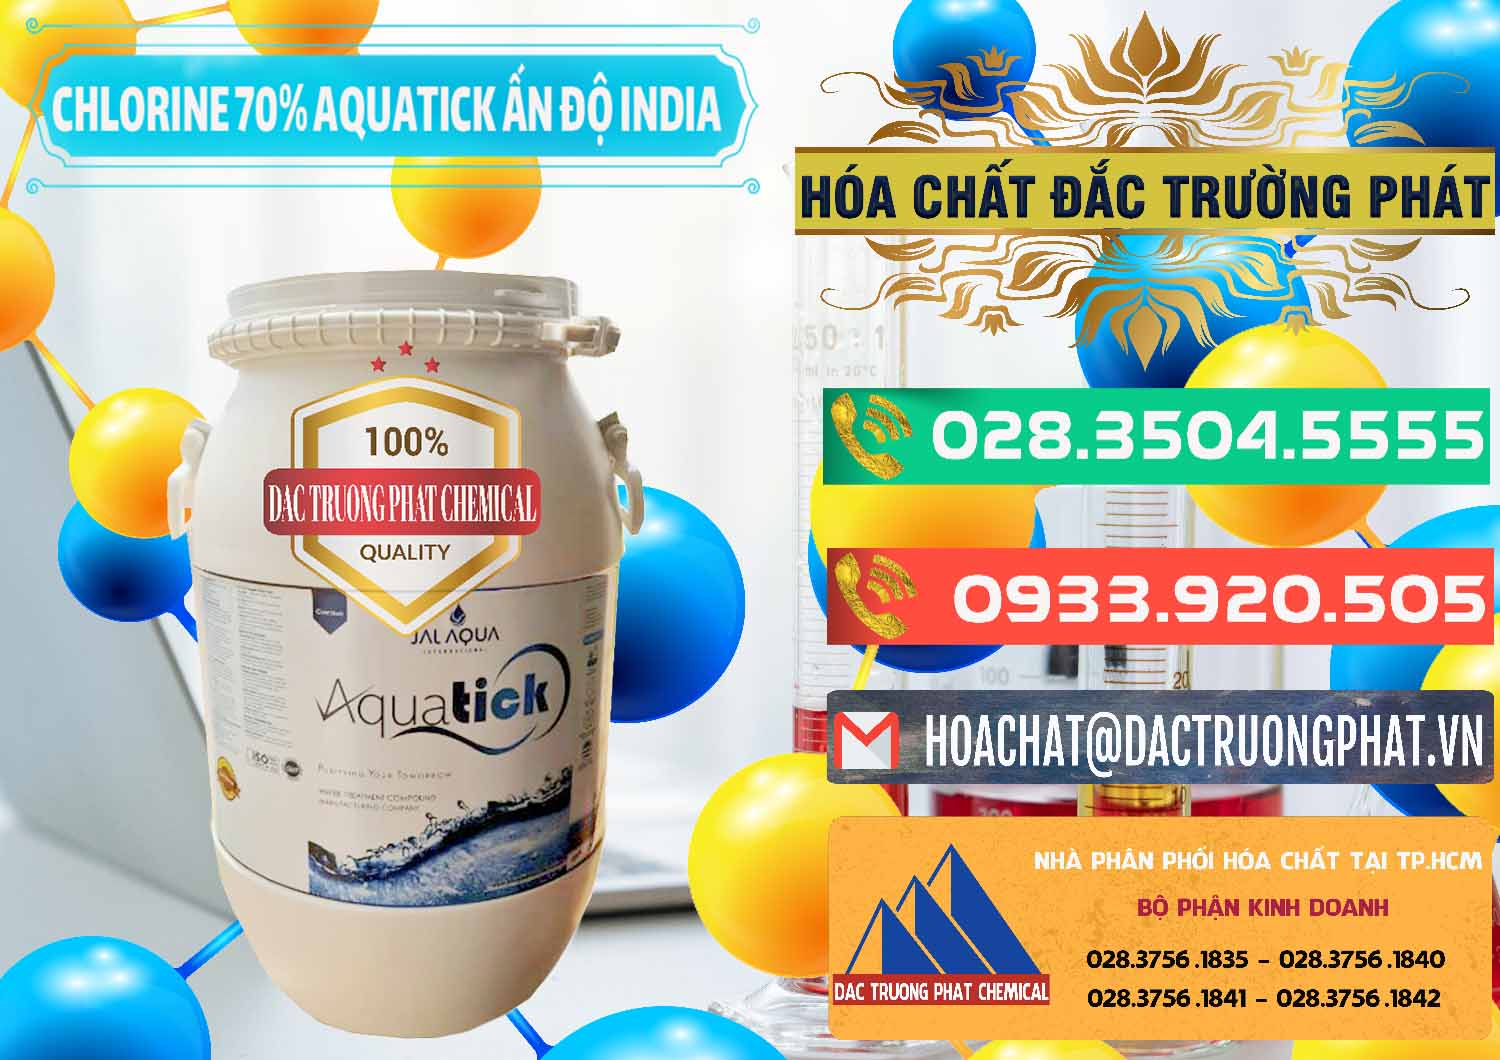 Bán - cung cấp Chlorine – Clorin 70% Aquatick Jal Aqua Ấn Độ India - 0215 - Công ty cung cấp và phân phối hóa chất tại TP.HCM - congtyhoachat.com.vn